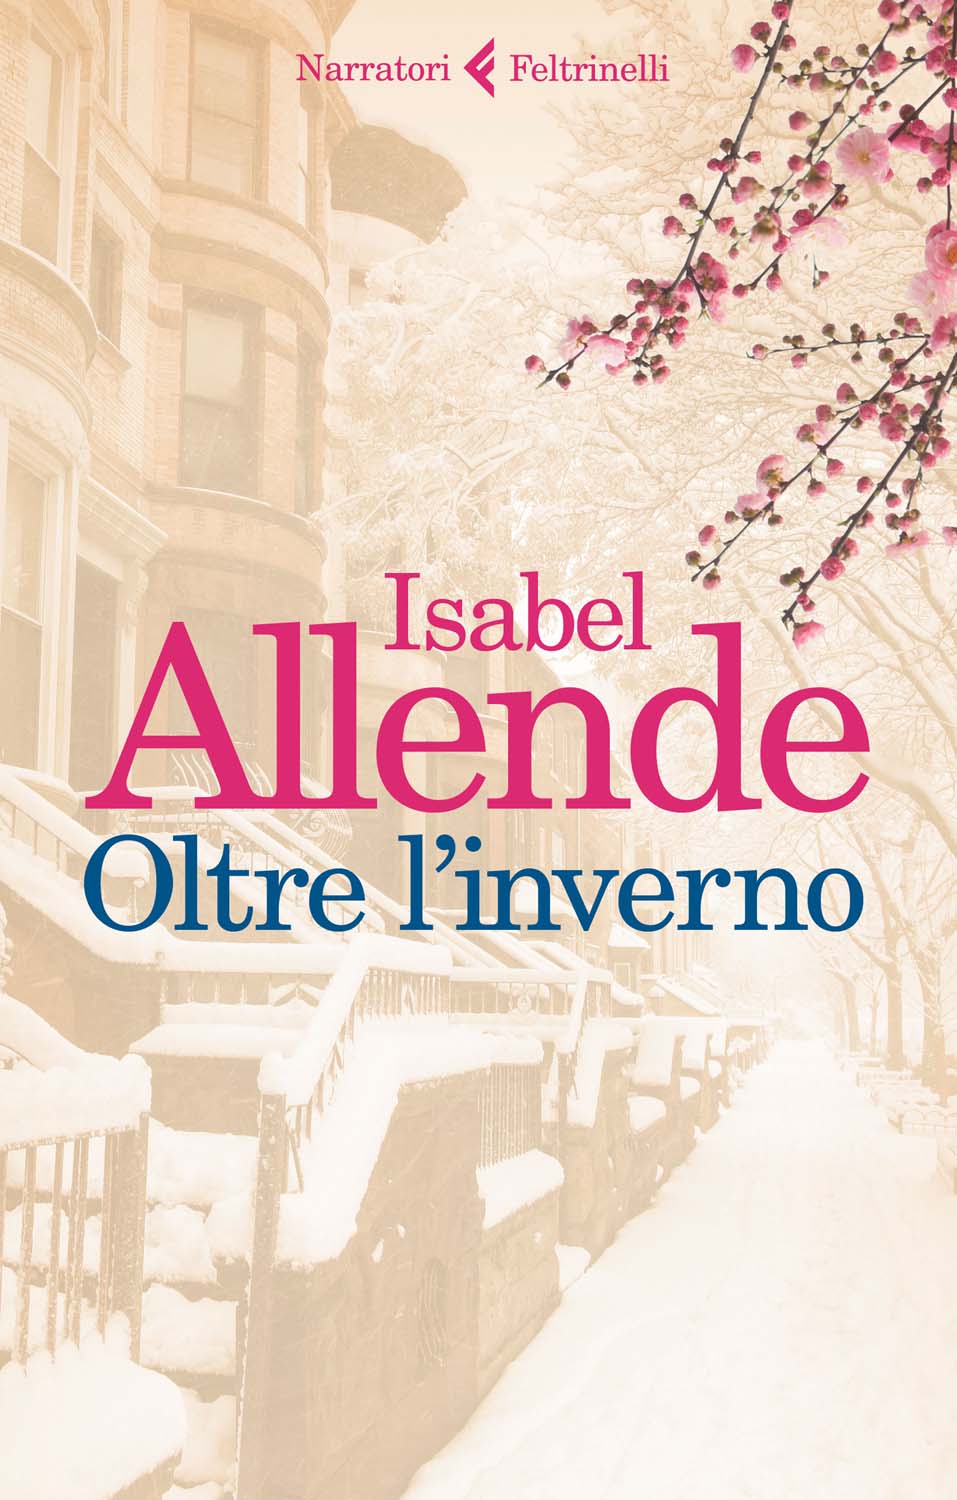 Libri Isabel Allende - Oltre L'inverno NUOVO SIGILLATO, EDIZIONE DEL 09/11/2017 SUBITO DISPONIBILE